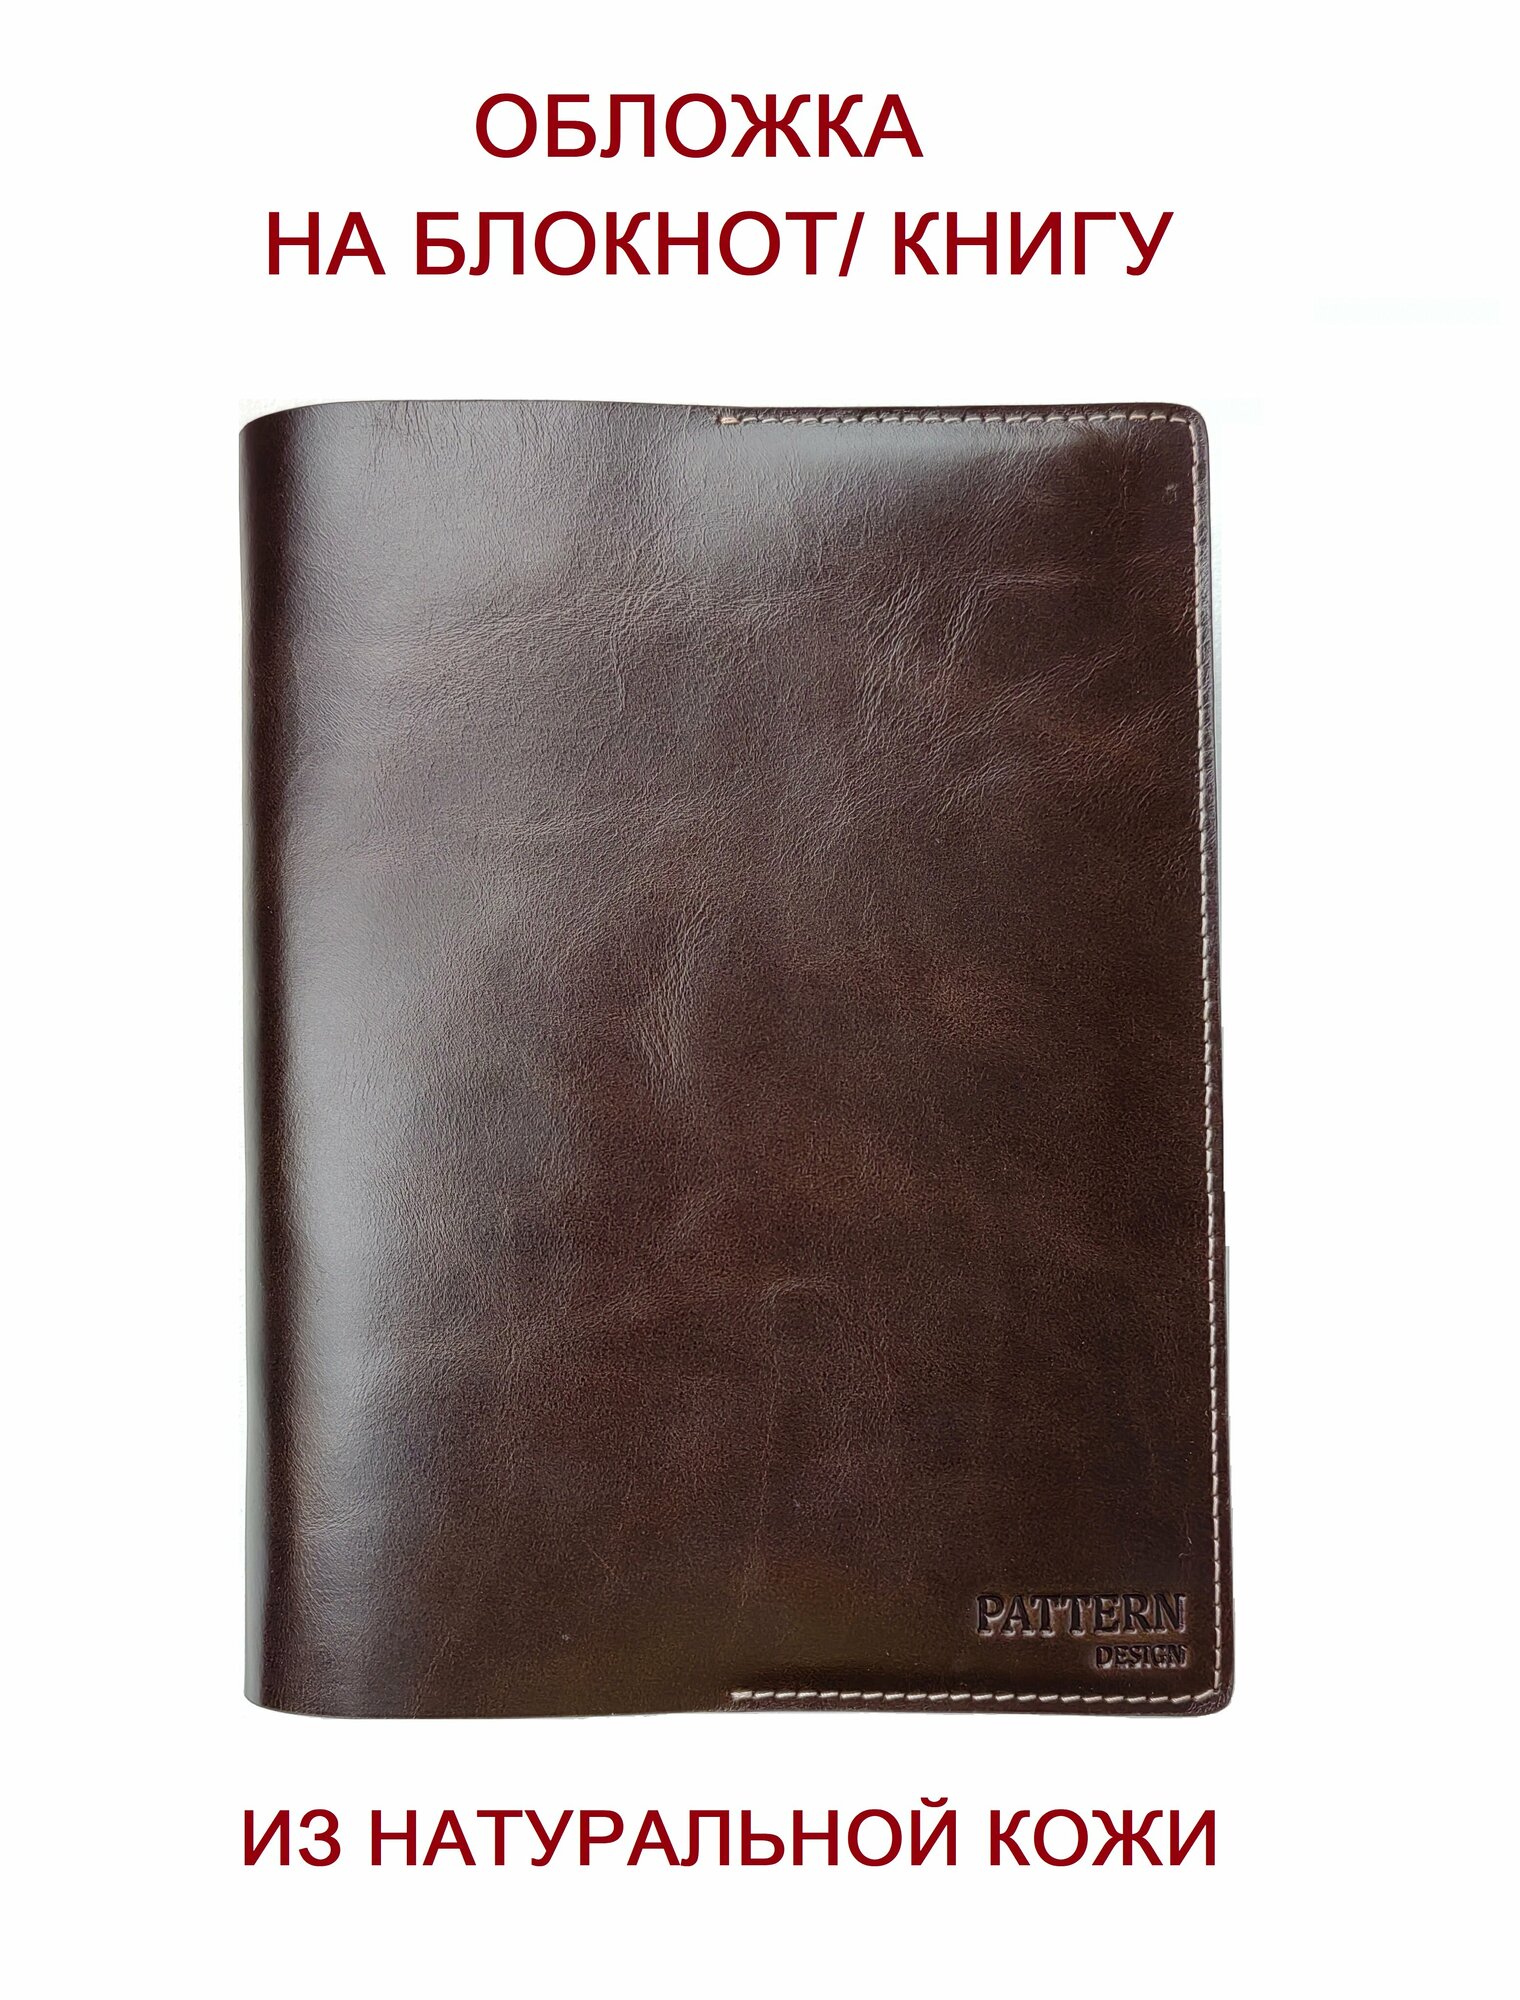 Обложка Pattern для книг и ежедневников из натуральной кожи шоколадный цвет формат А5/ 046